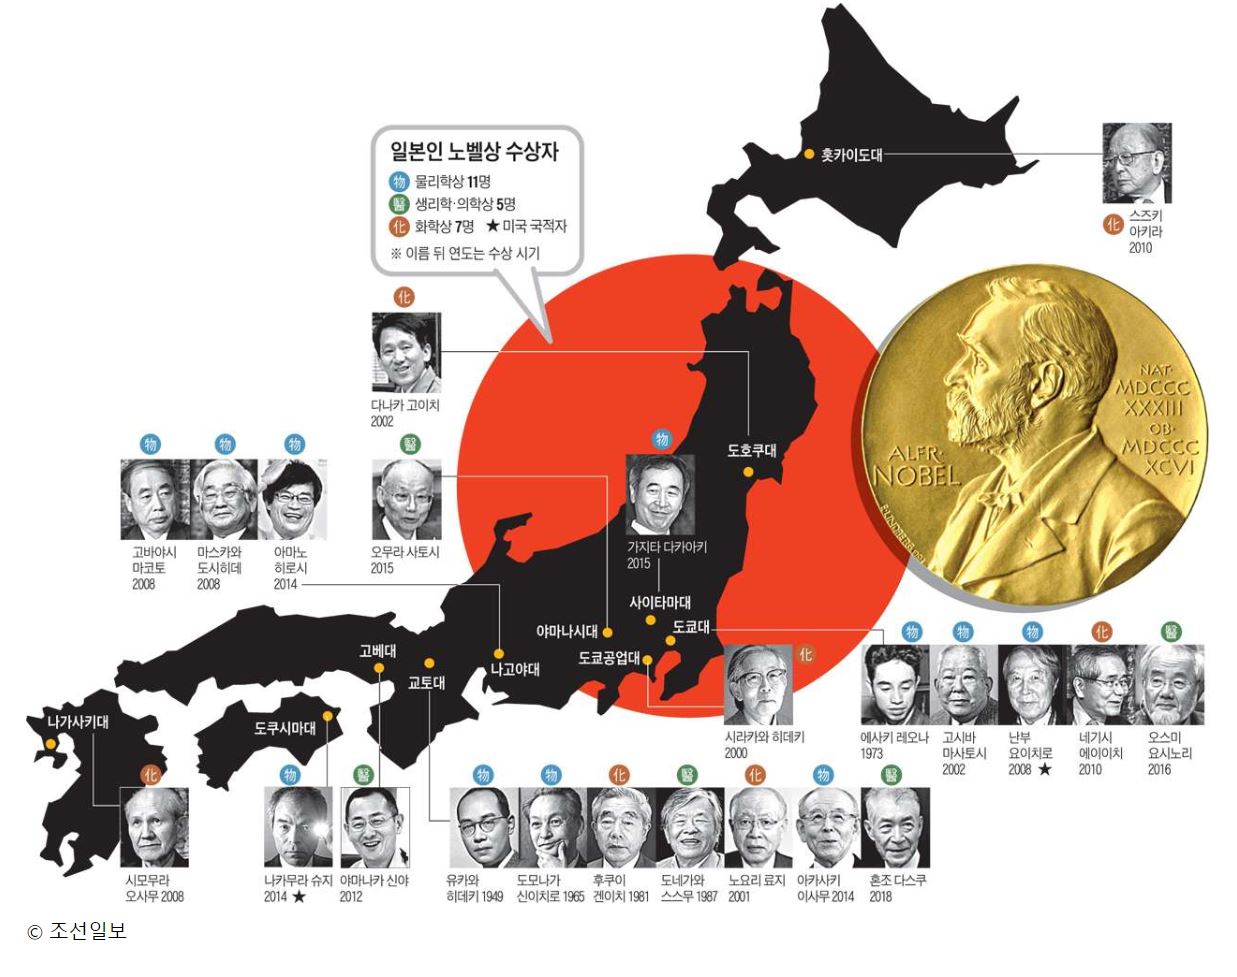 なぜ韓国ではノーベル賞受賞者が現れなくて日本では多くの人が受賞するのか 韓国の反応 Multilingirl